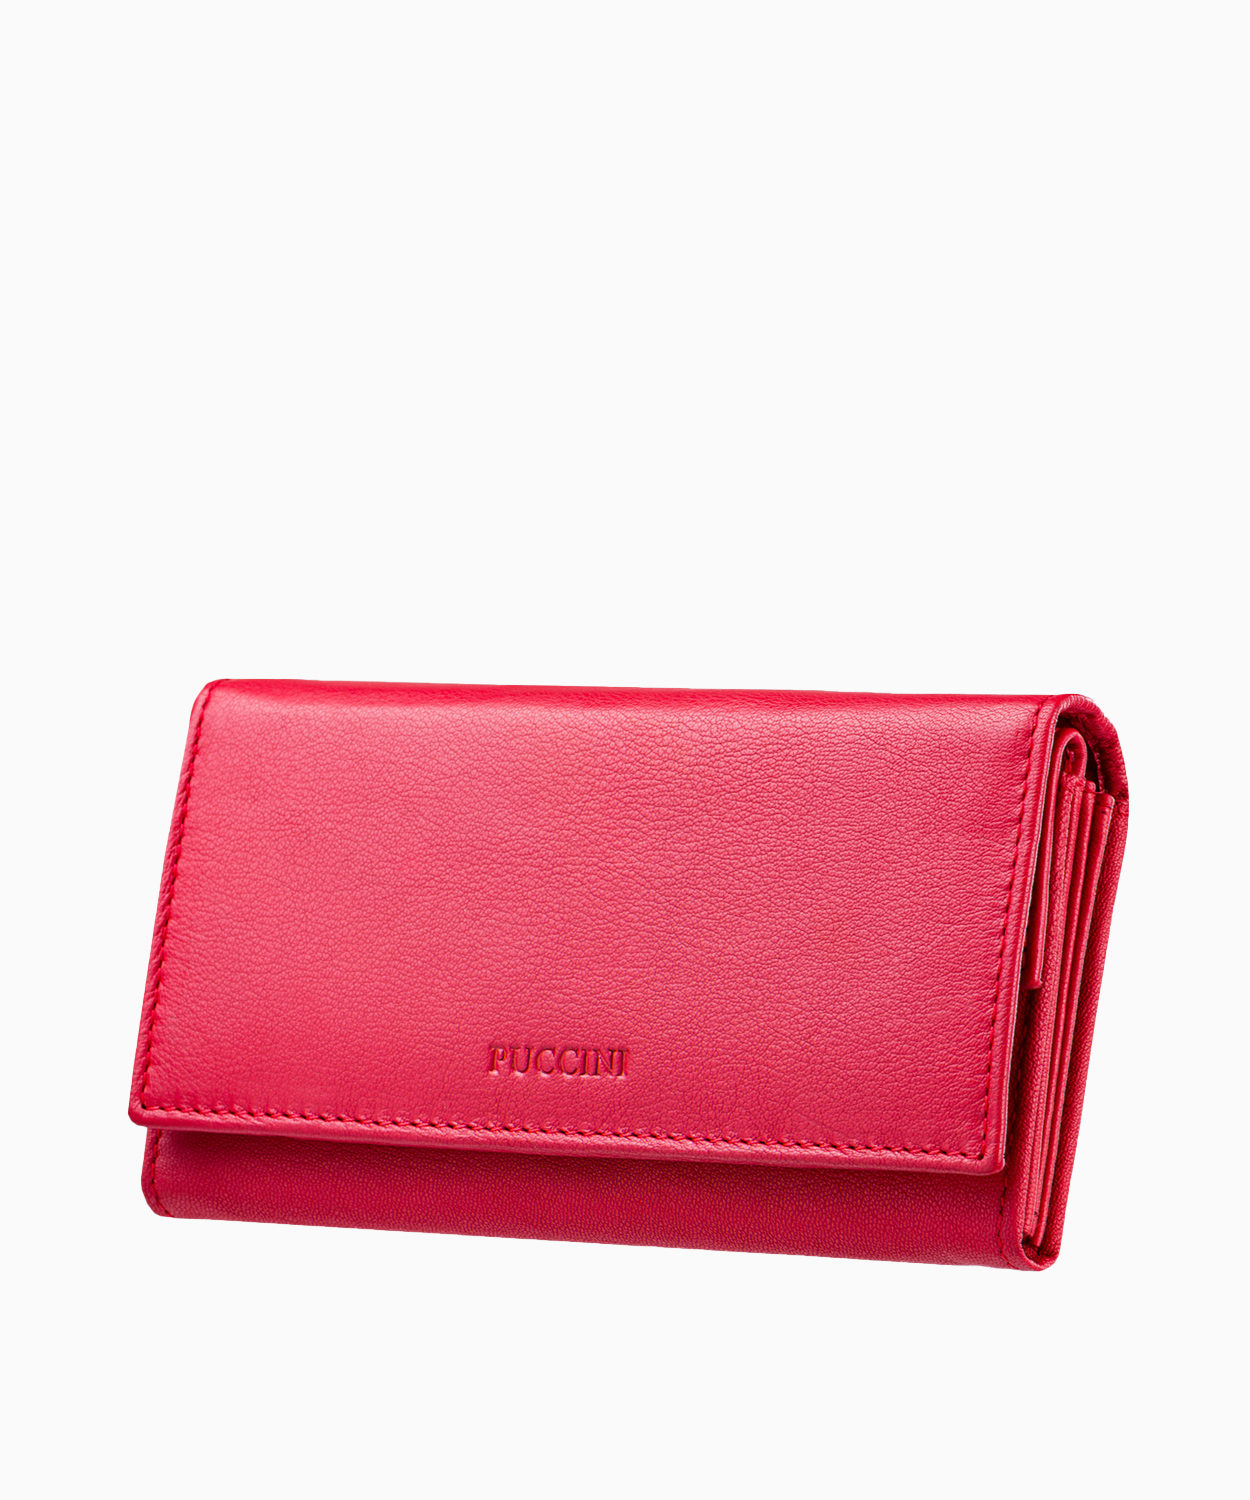 PUCCINI Duży skórzany portfel damski czerwony